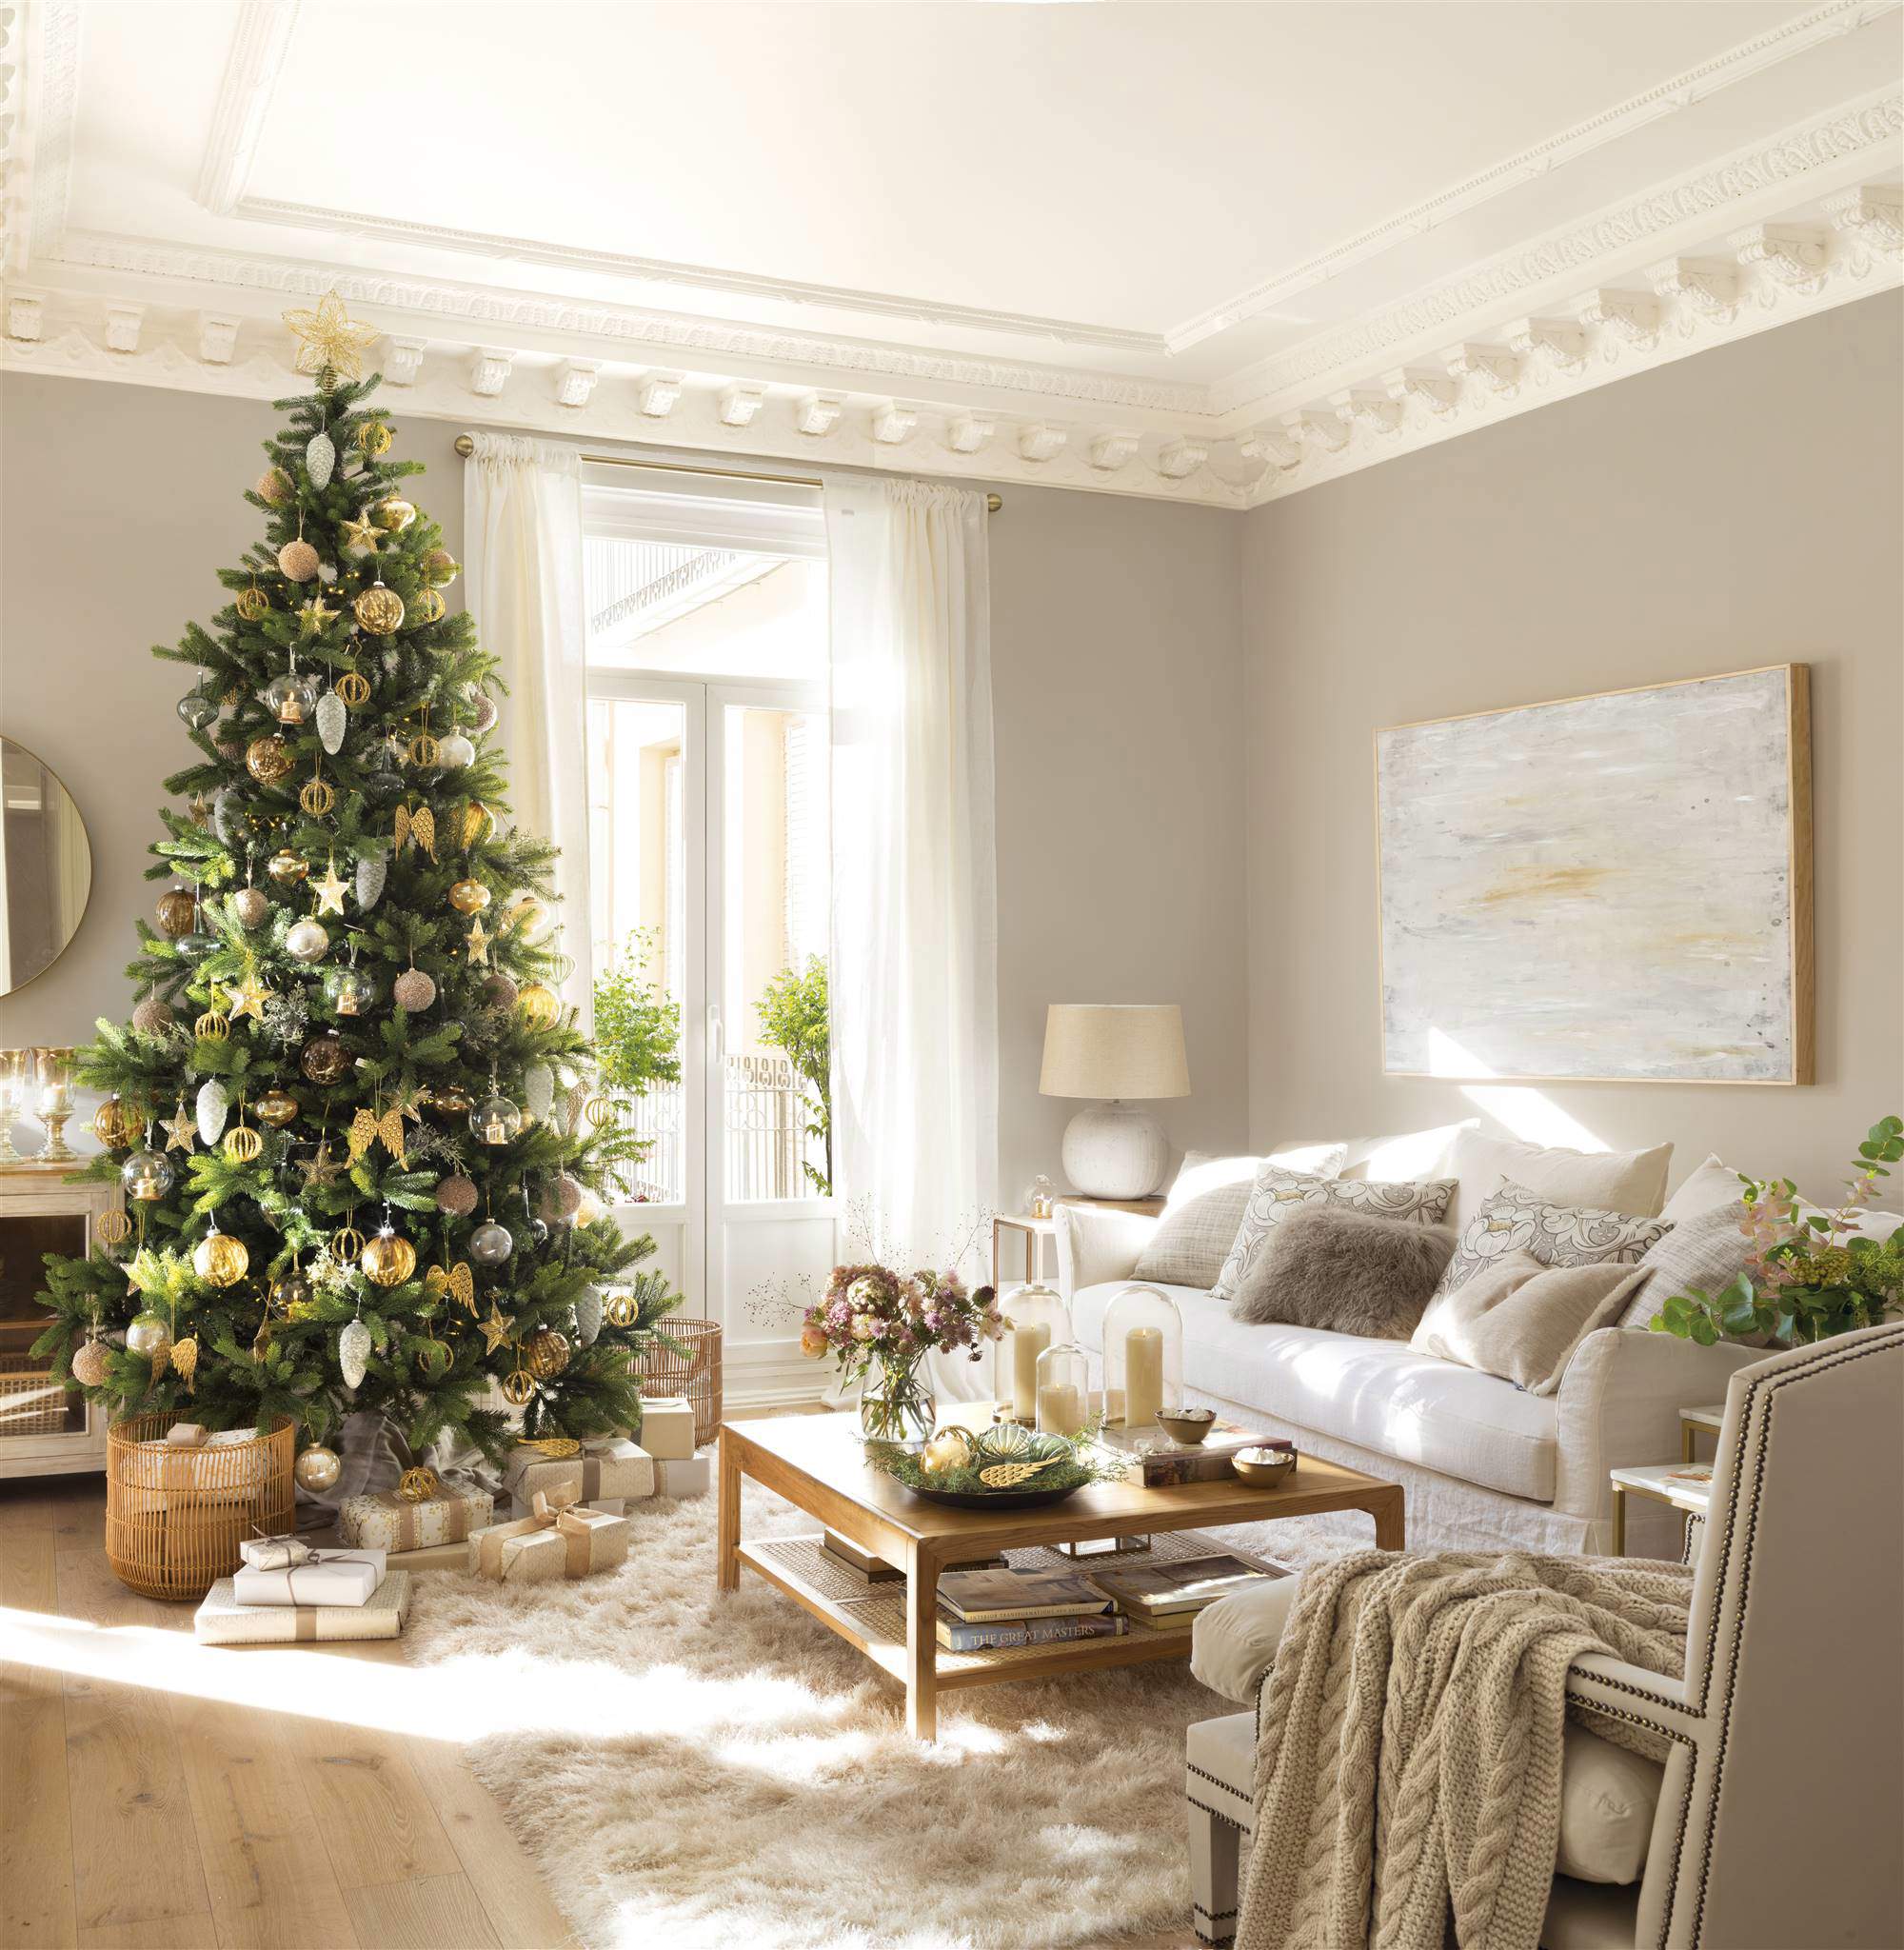 Salón con sofá blanco decorado por Navidad